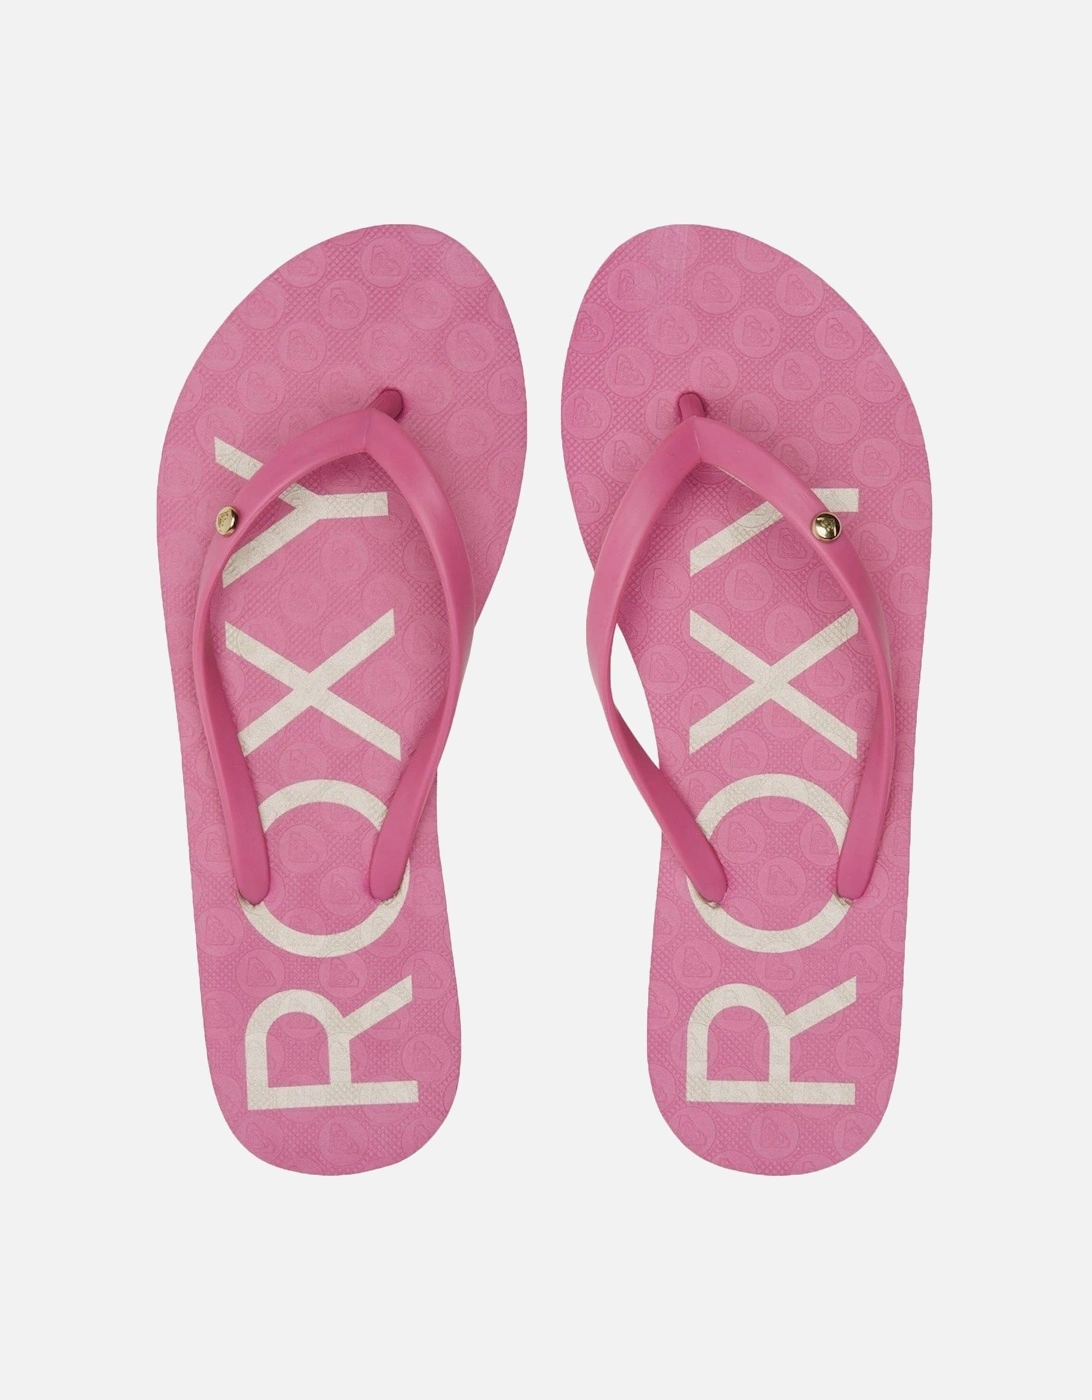 Womens Sandy Summer Sandals Flip Flops